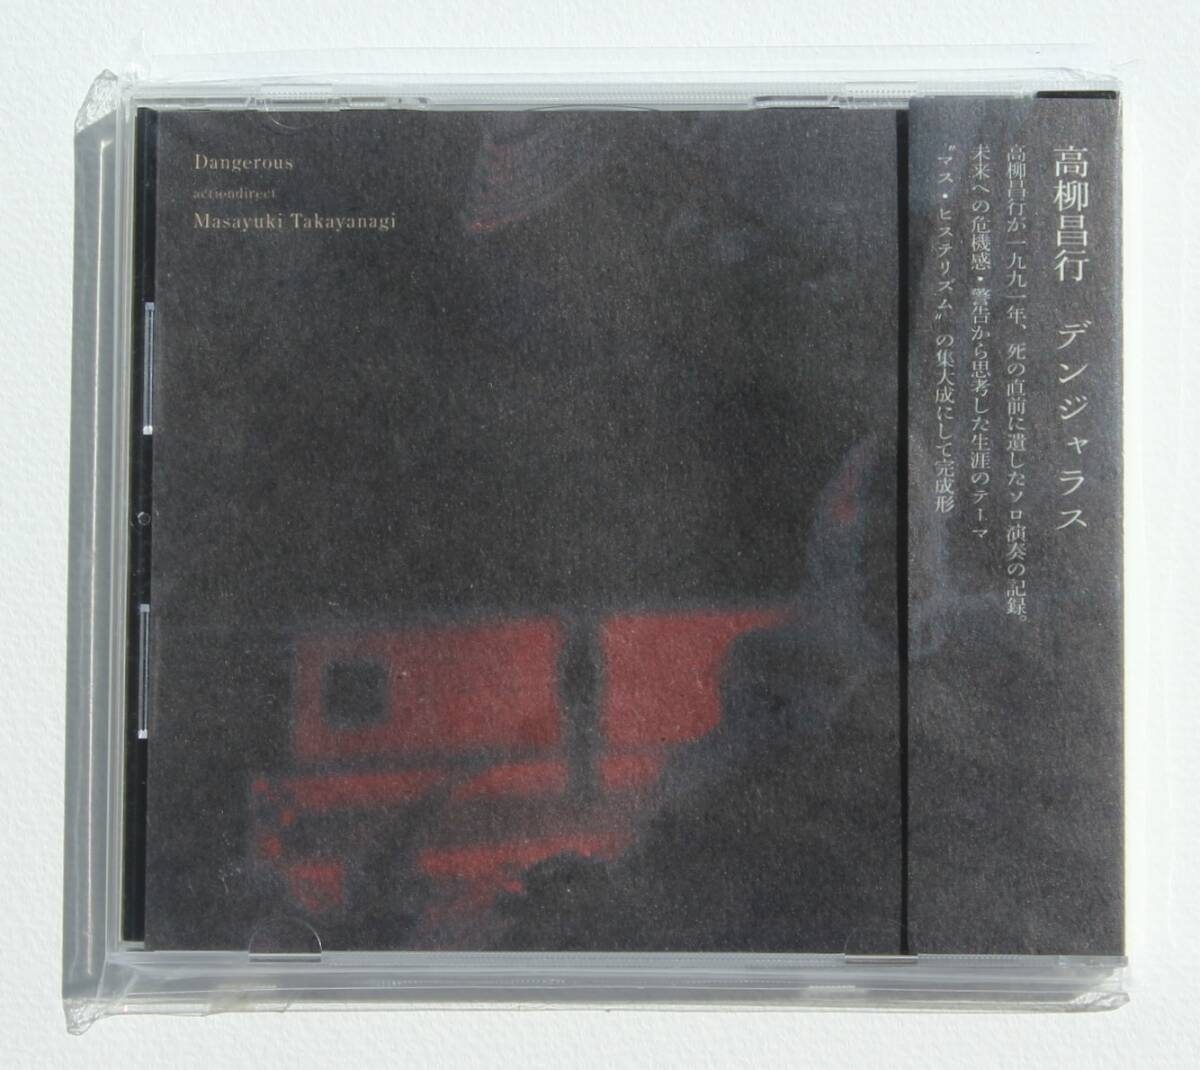 高柳昌行『デンジャラス』生前最後の演奏を収録した特典CD付き アクション・ダイレクト 伝説的なジャズ・ギタリスト ノイジーなソロ演奏の画像1